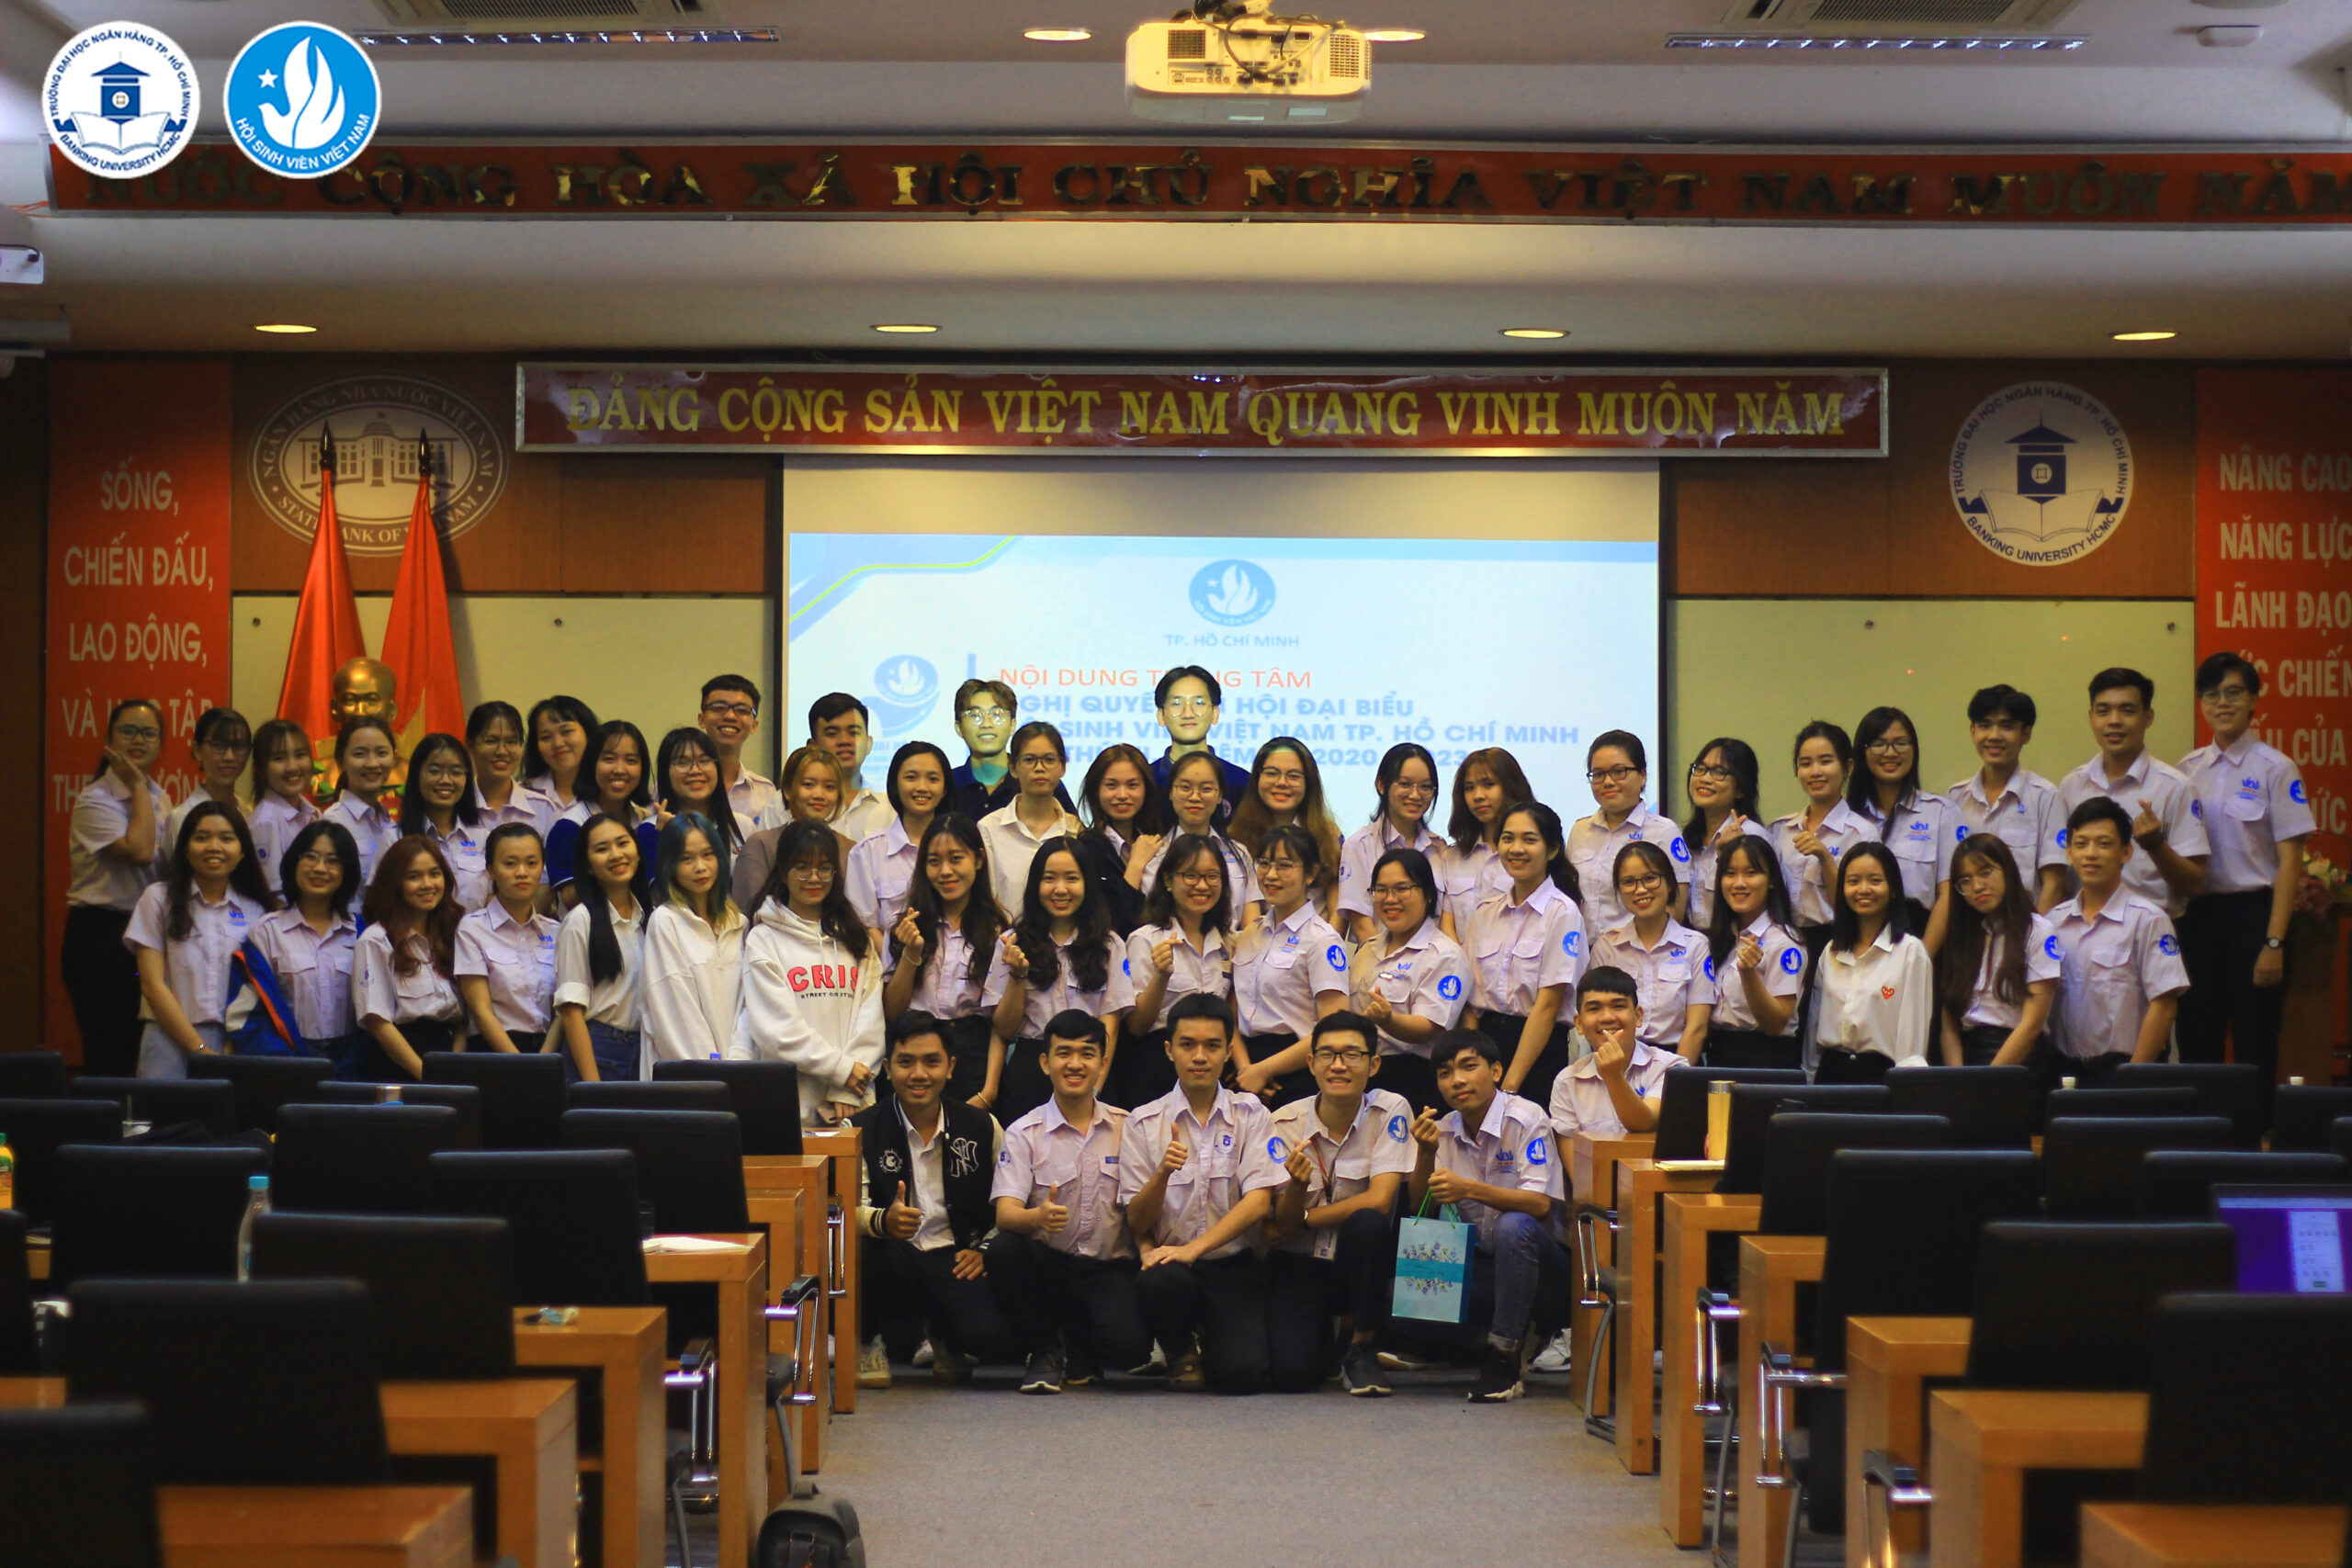 Hội nghị triển khai, quán triệt Nghị quyết Đại hội đại biểu Hội Sinh viên Việt Nam Thành phố Hồ Chí Minh lần thứ VI, nhiệm kỳ 2020 – 2023 kết thúc tốt đẹp.